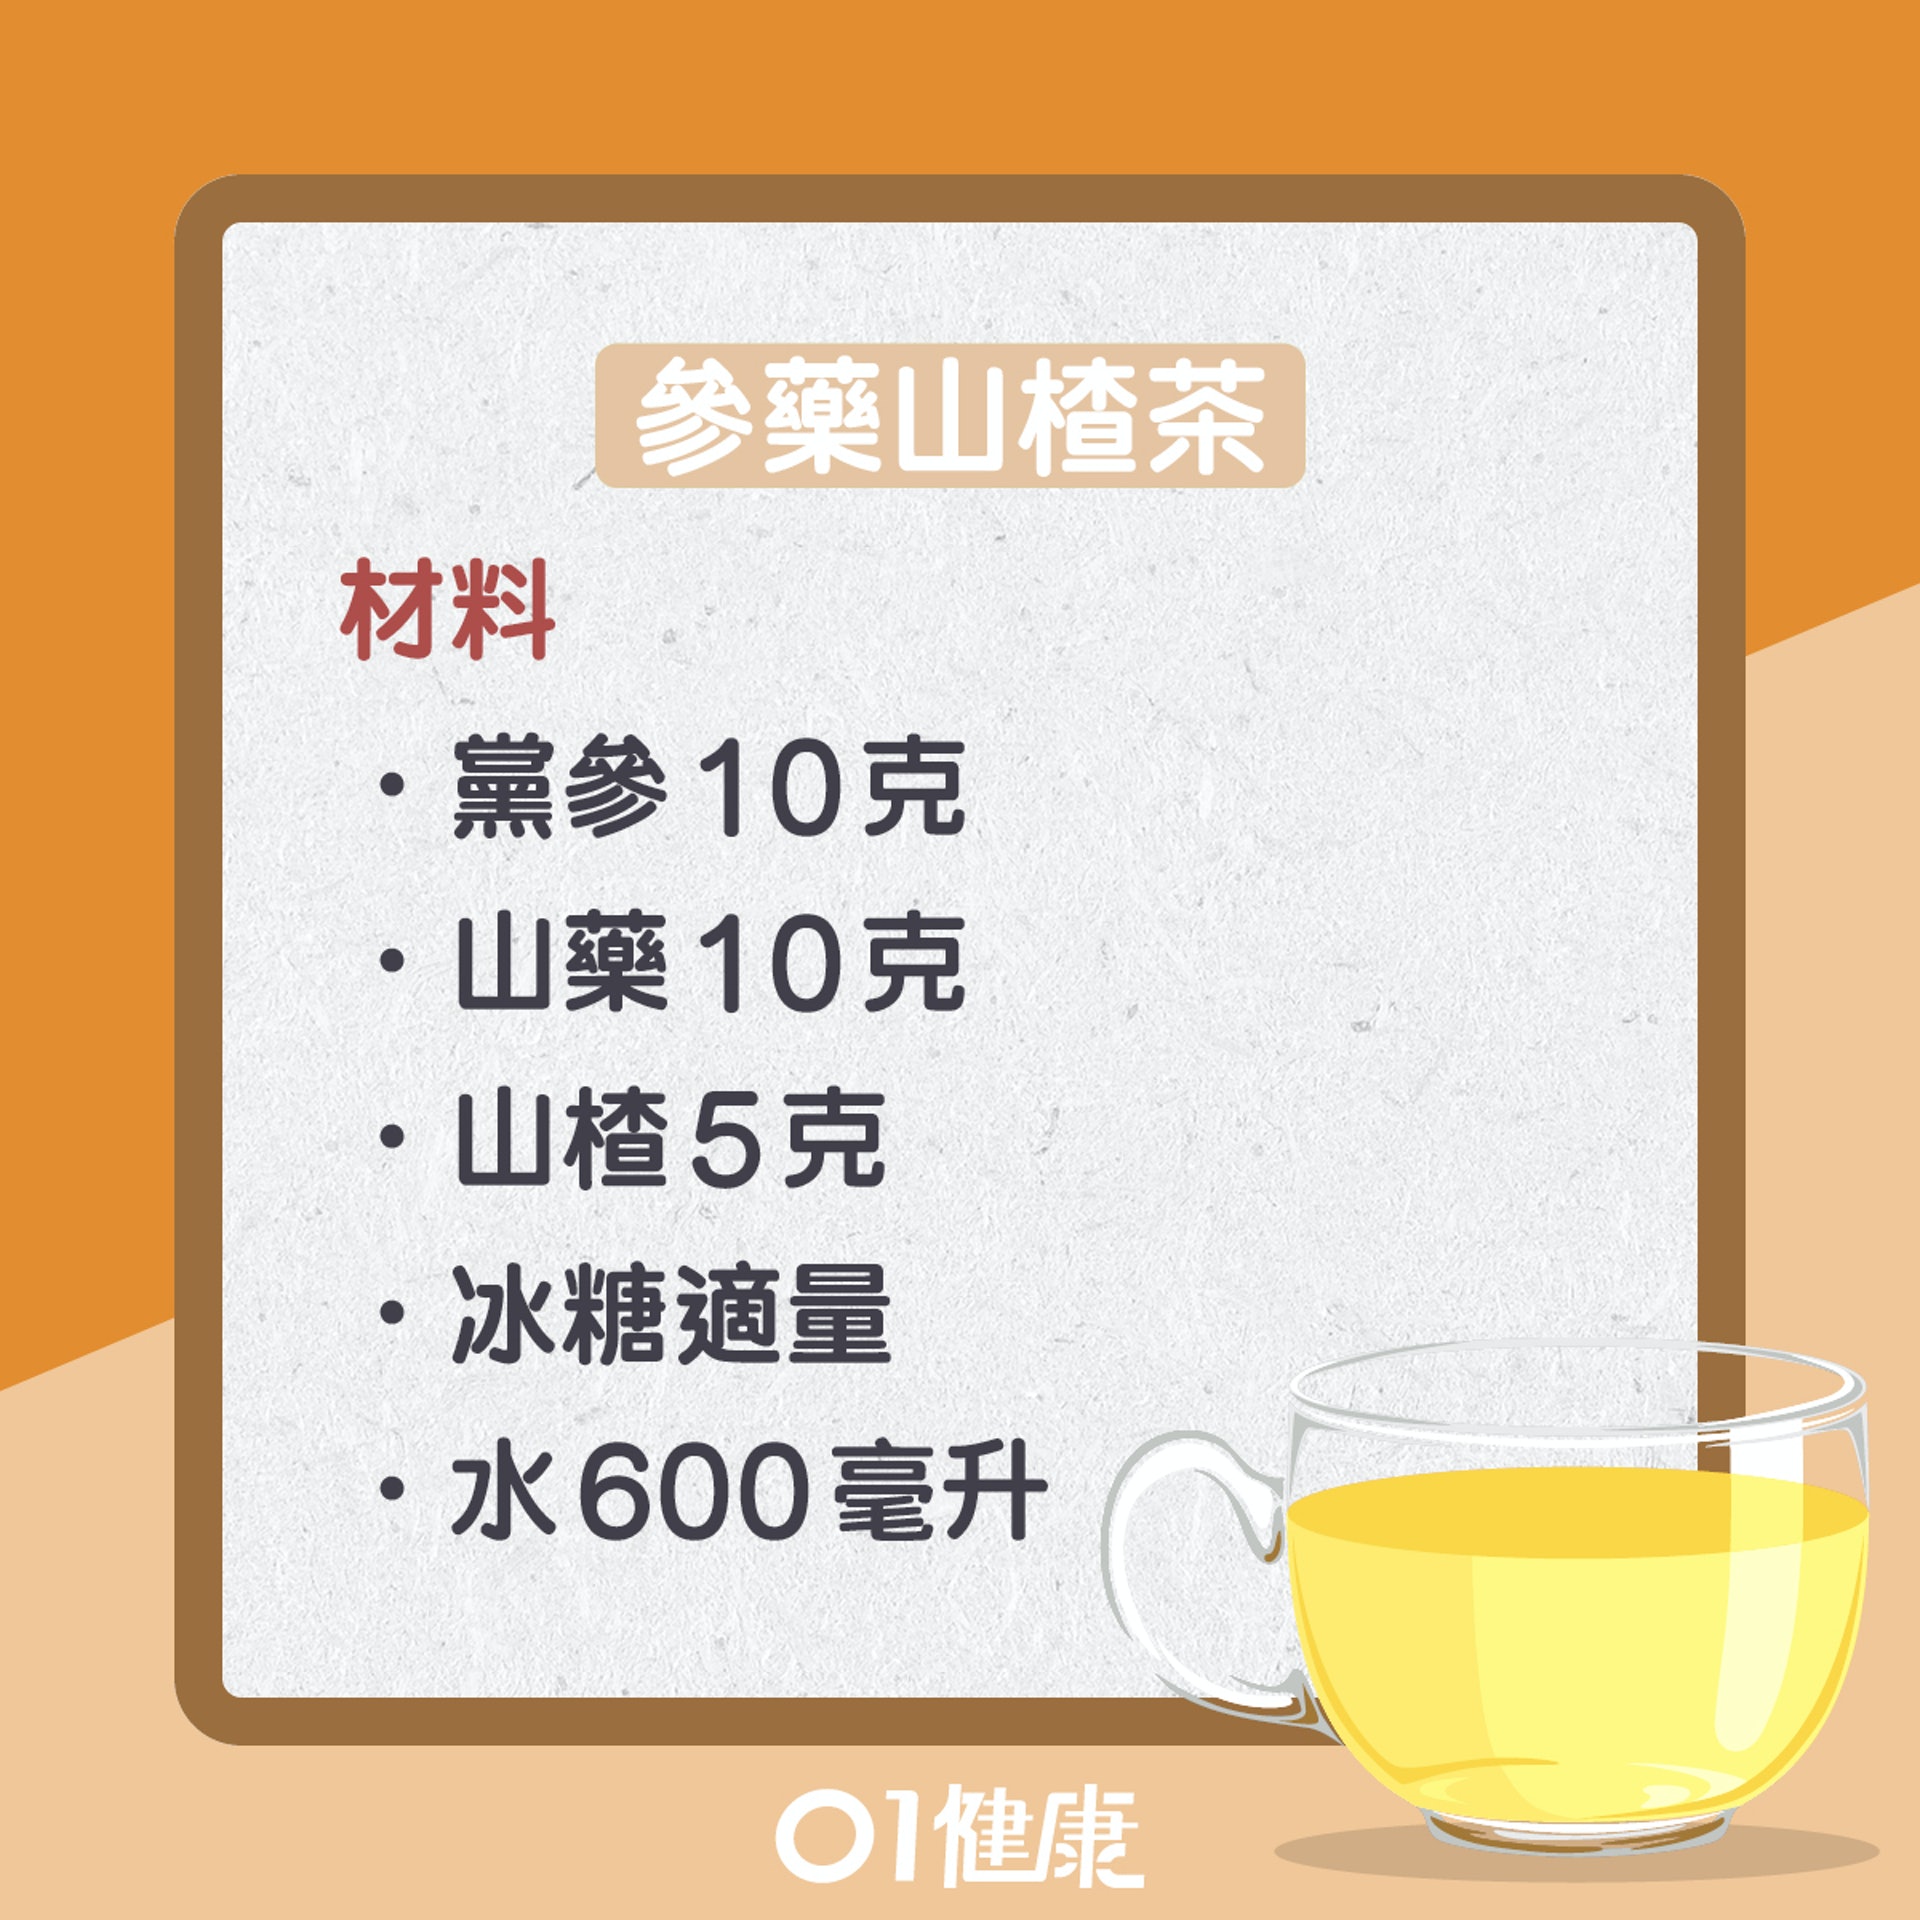 參藥山楂茶（01製圖）